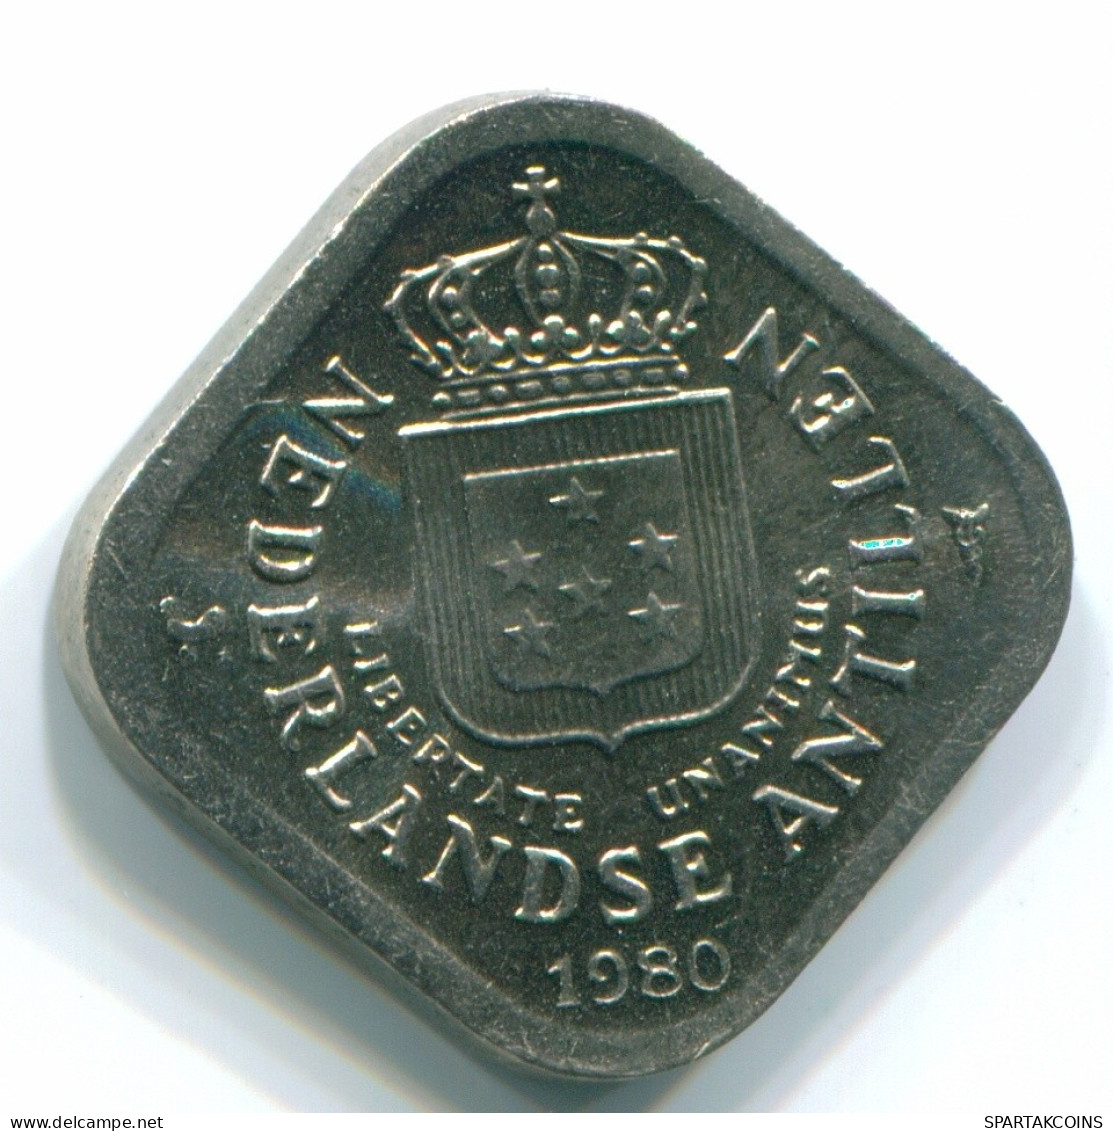 5 CENTS 1980 NIEDERLÄNDISCHE ANTILLEN Nickel Koloniale Münze #S12321.D.A - Antilles Néerlandaises